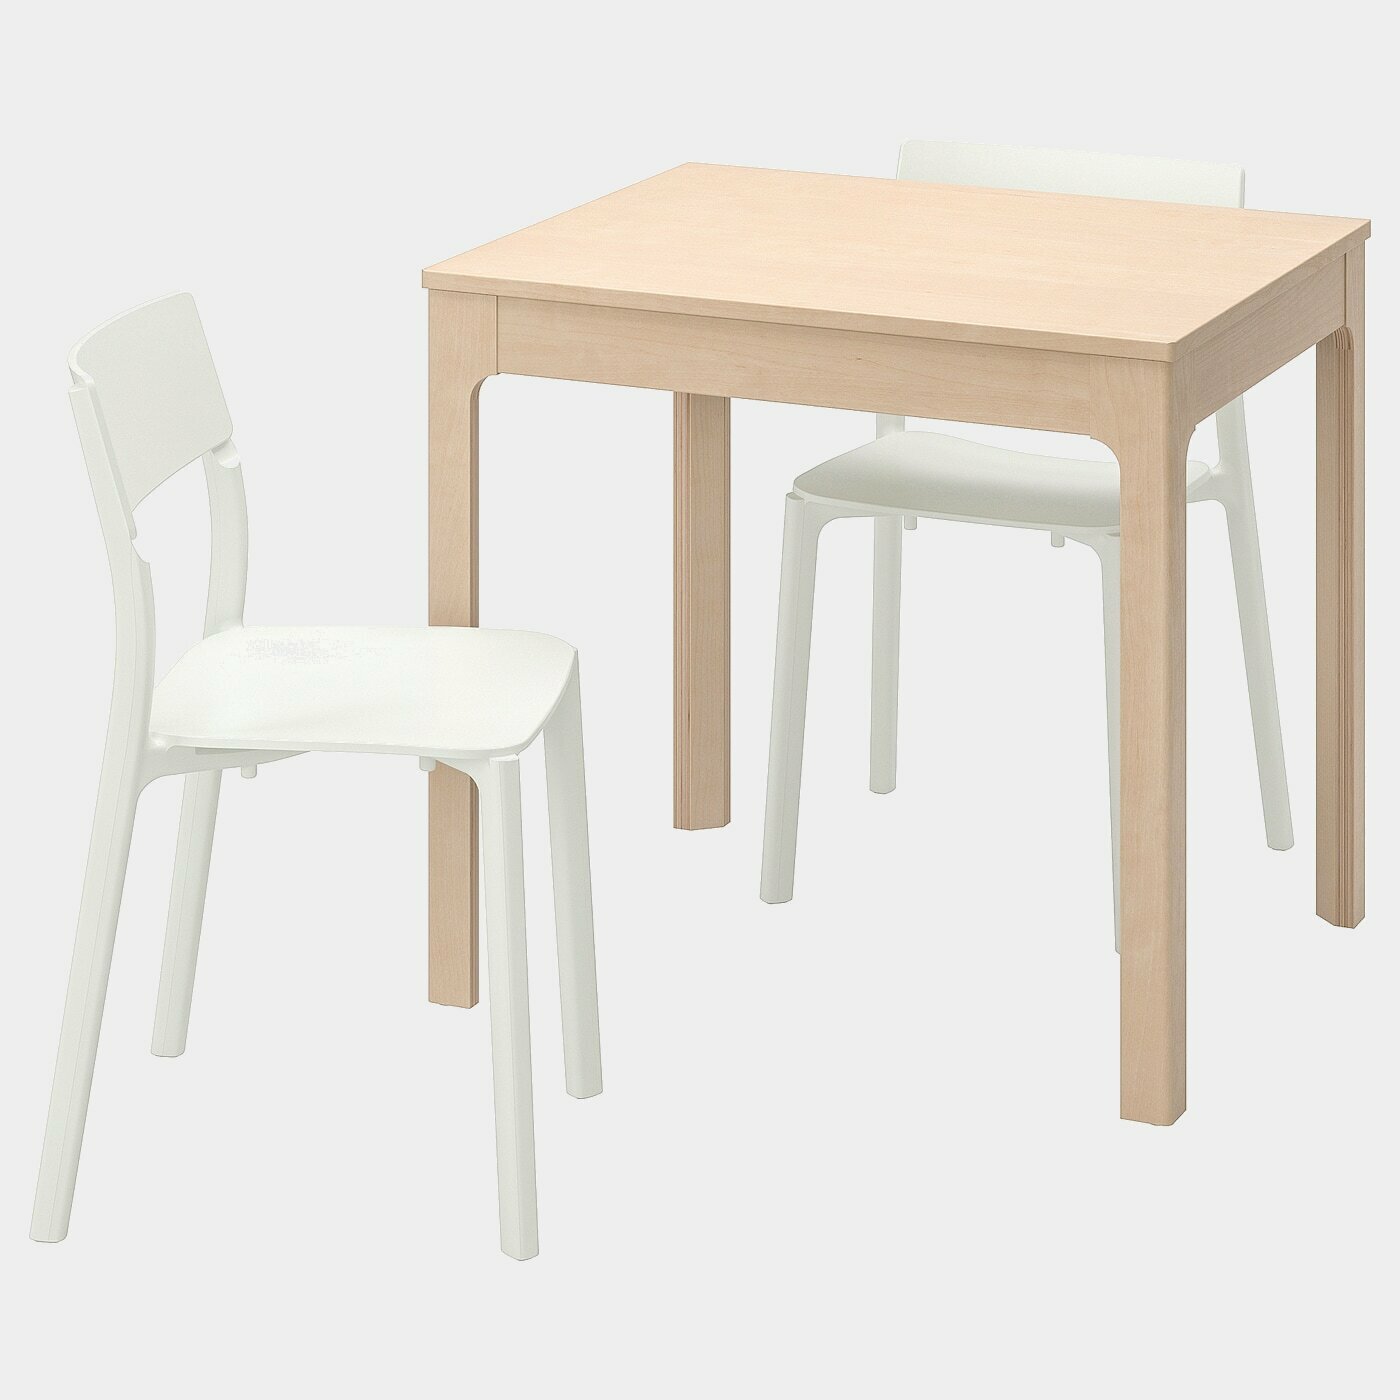 EKEDALEN / JANINGE Tisch und 2 Stühle  - Essplatzgruppe - Möbel Ideen für dein Zuhause von Home Trends. Möbel Trends von Social Media Influencer für dein Skandi Zuhause.